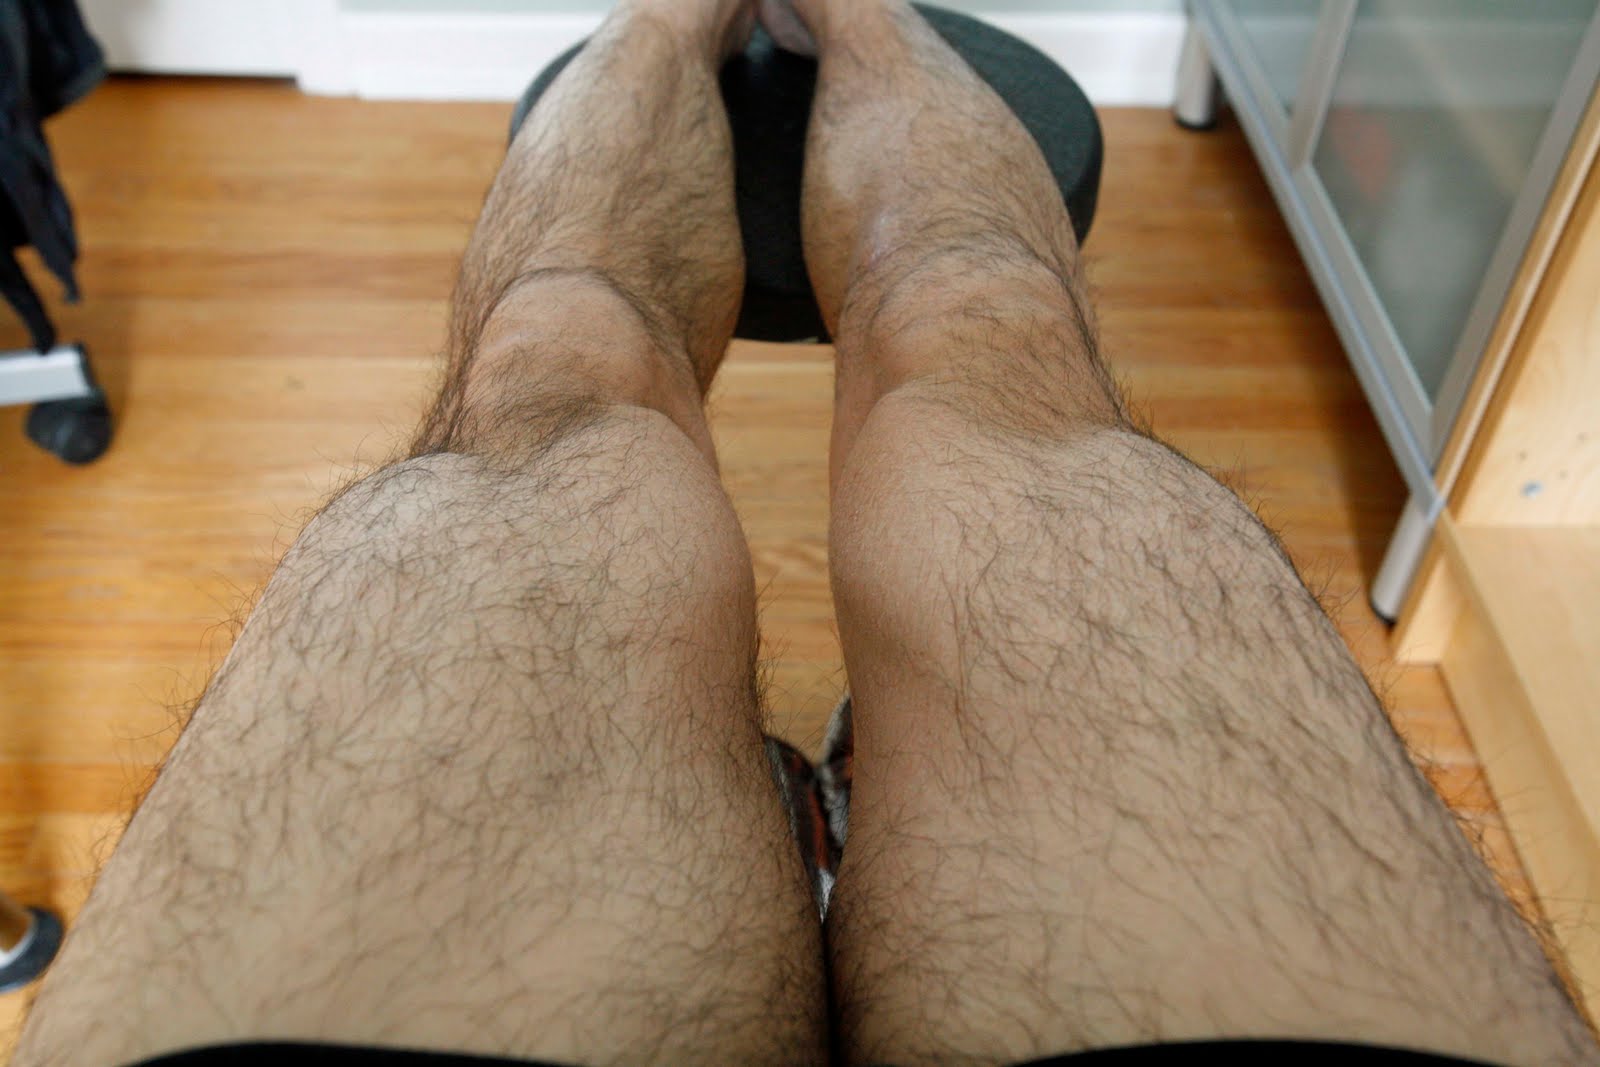 Muscular Hairy Legs 42